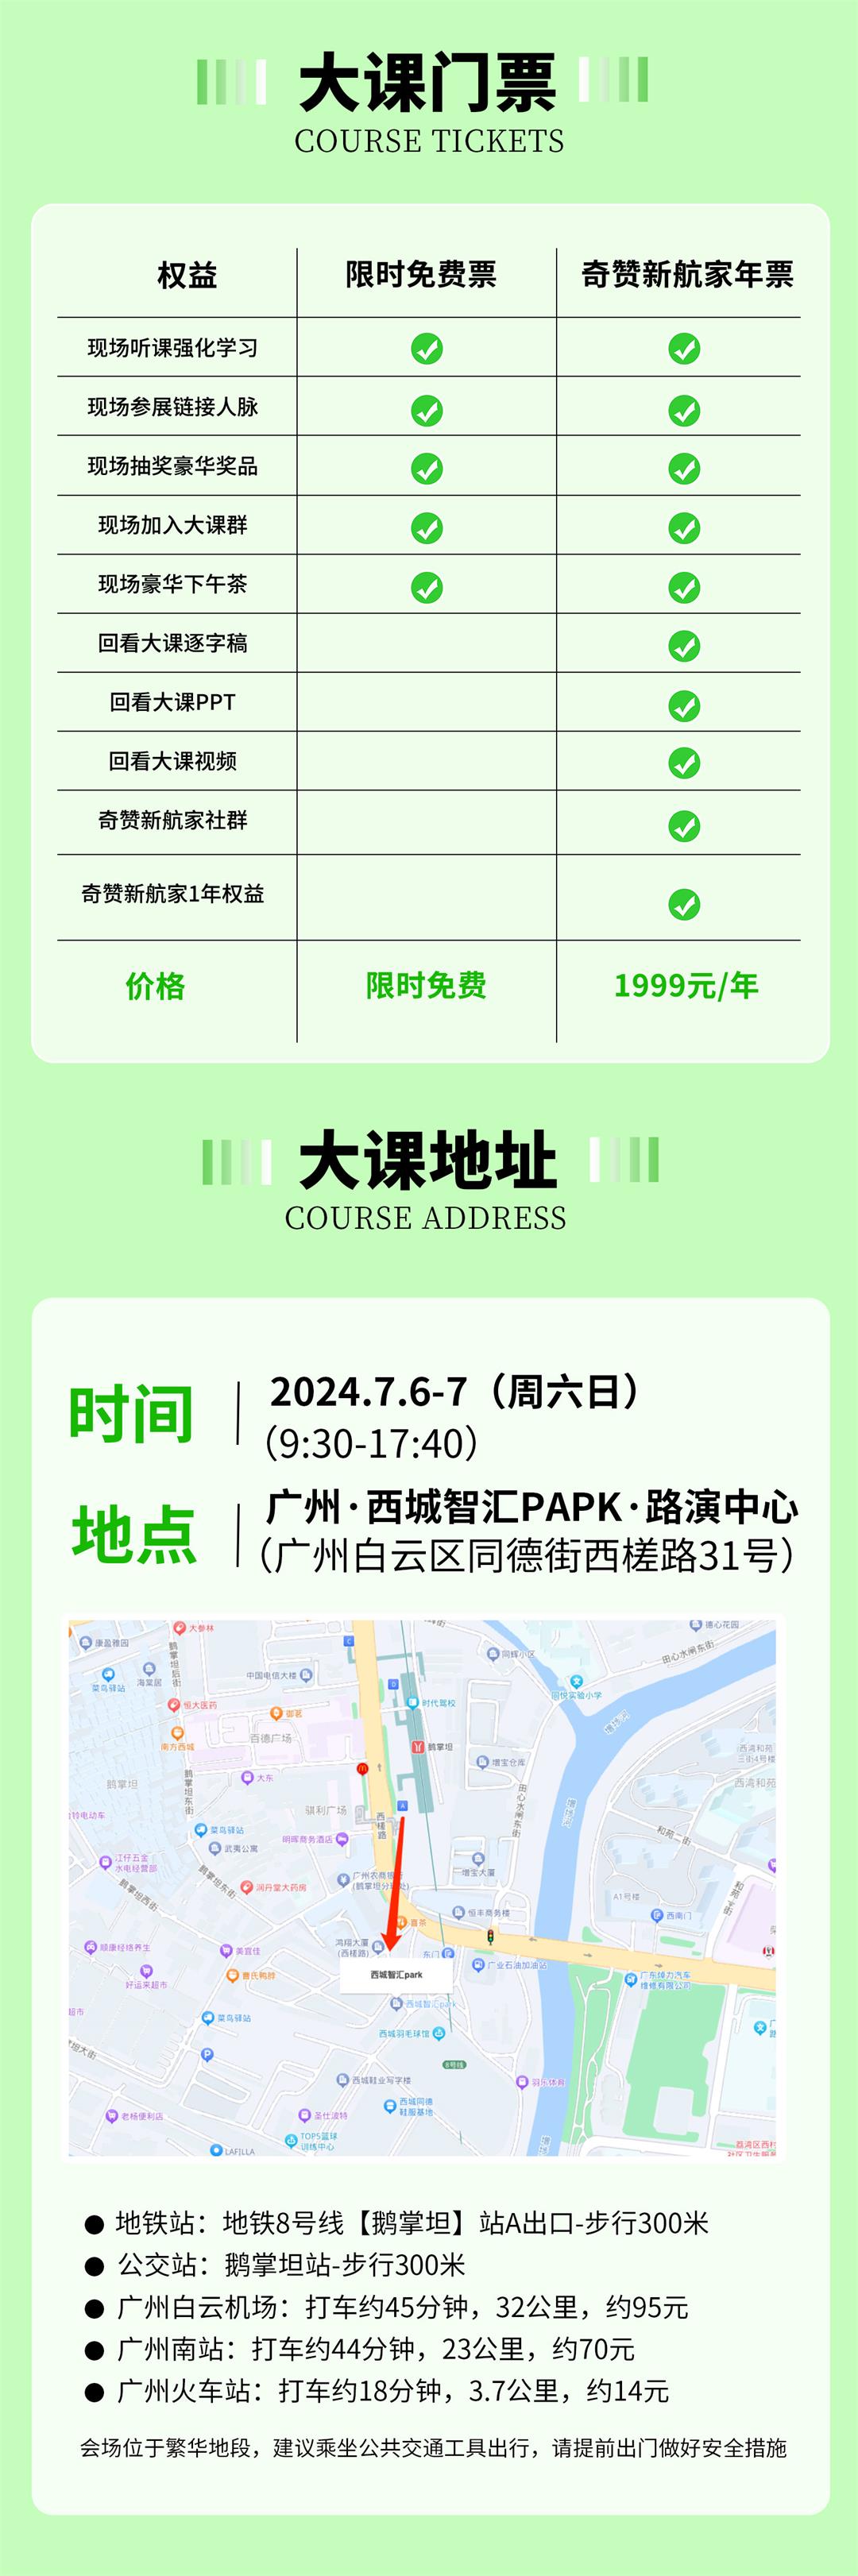 7月广州站长图9.jpg